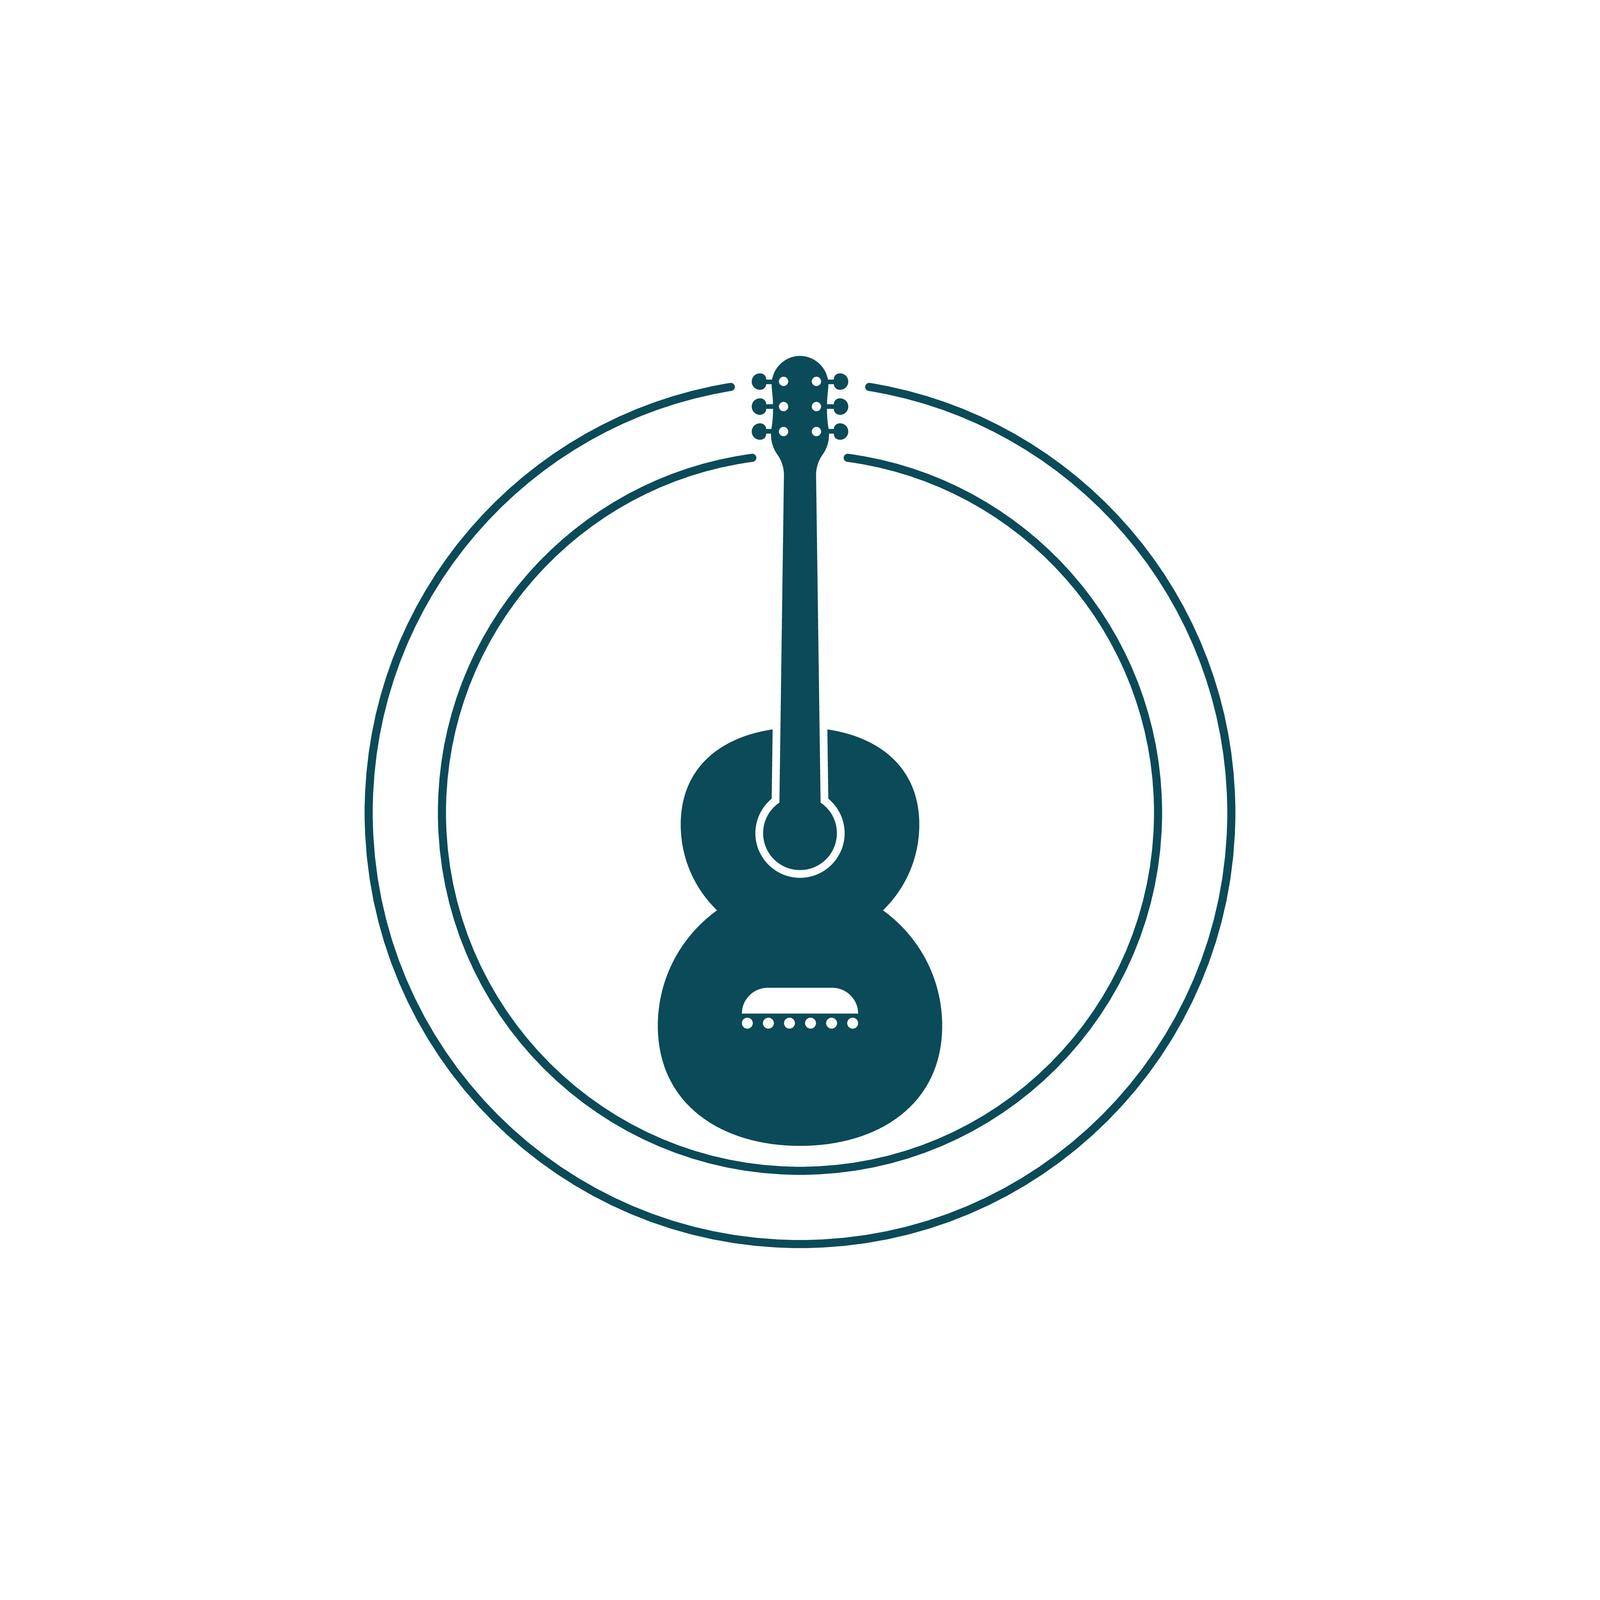 Guitar vector icon illustration by Elaelo